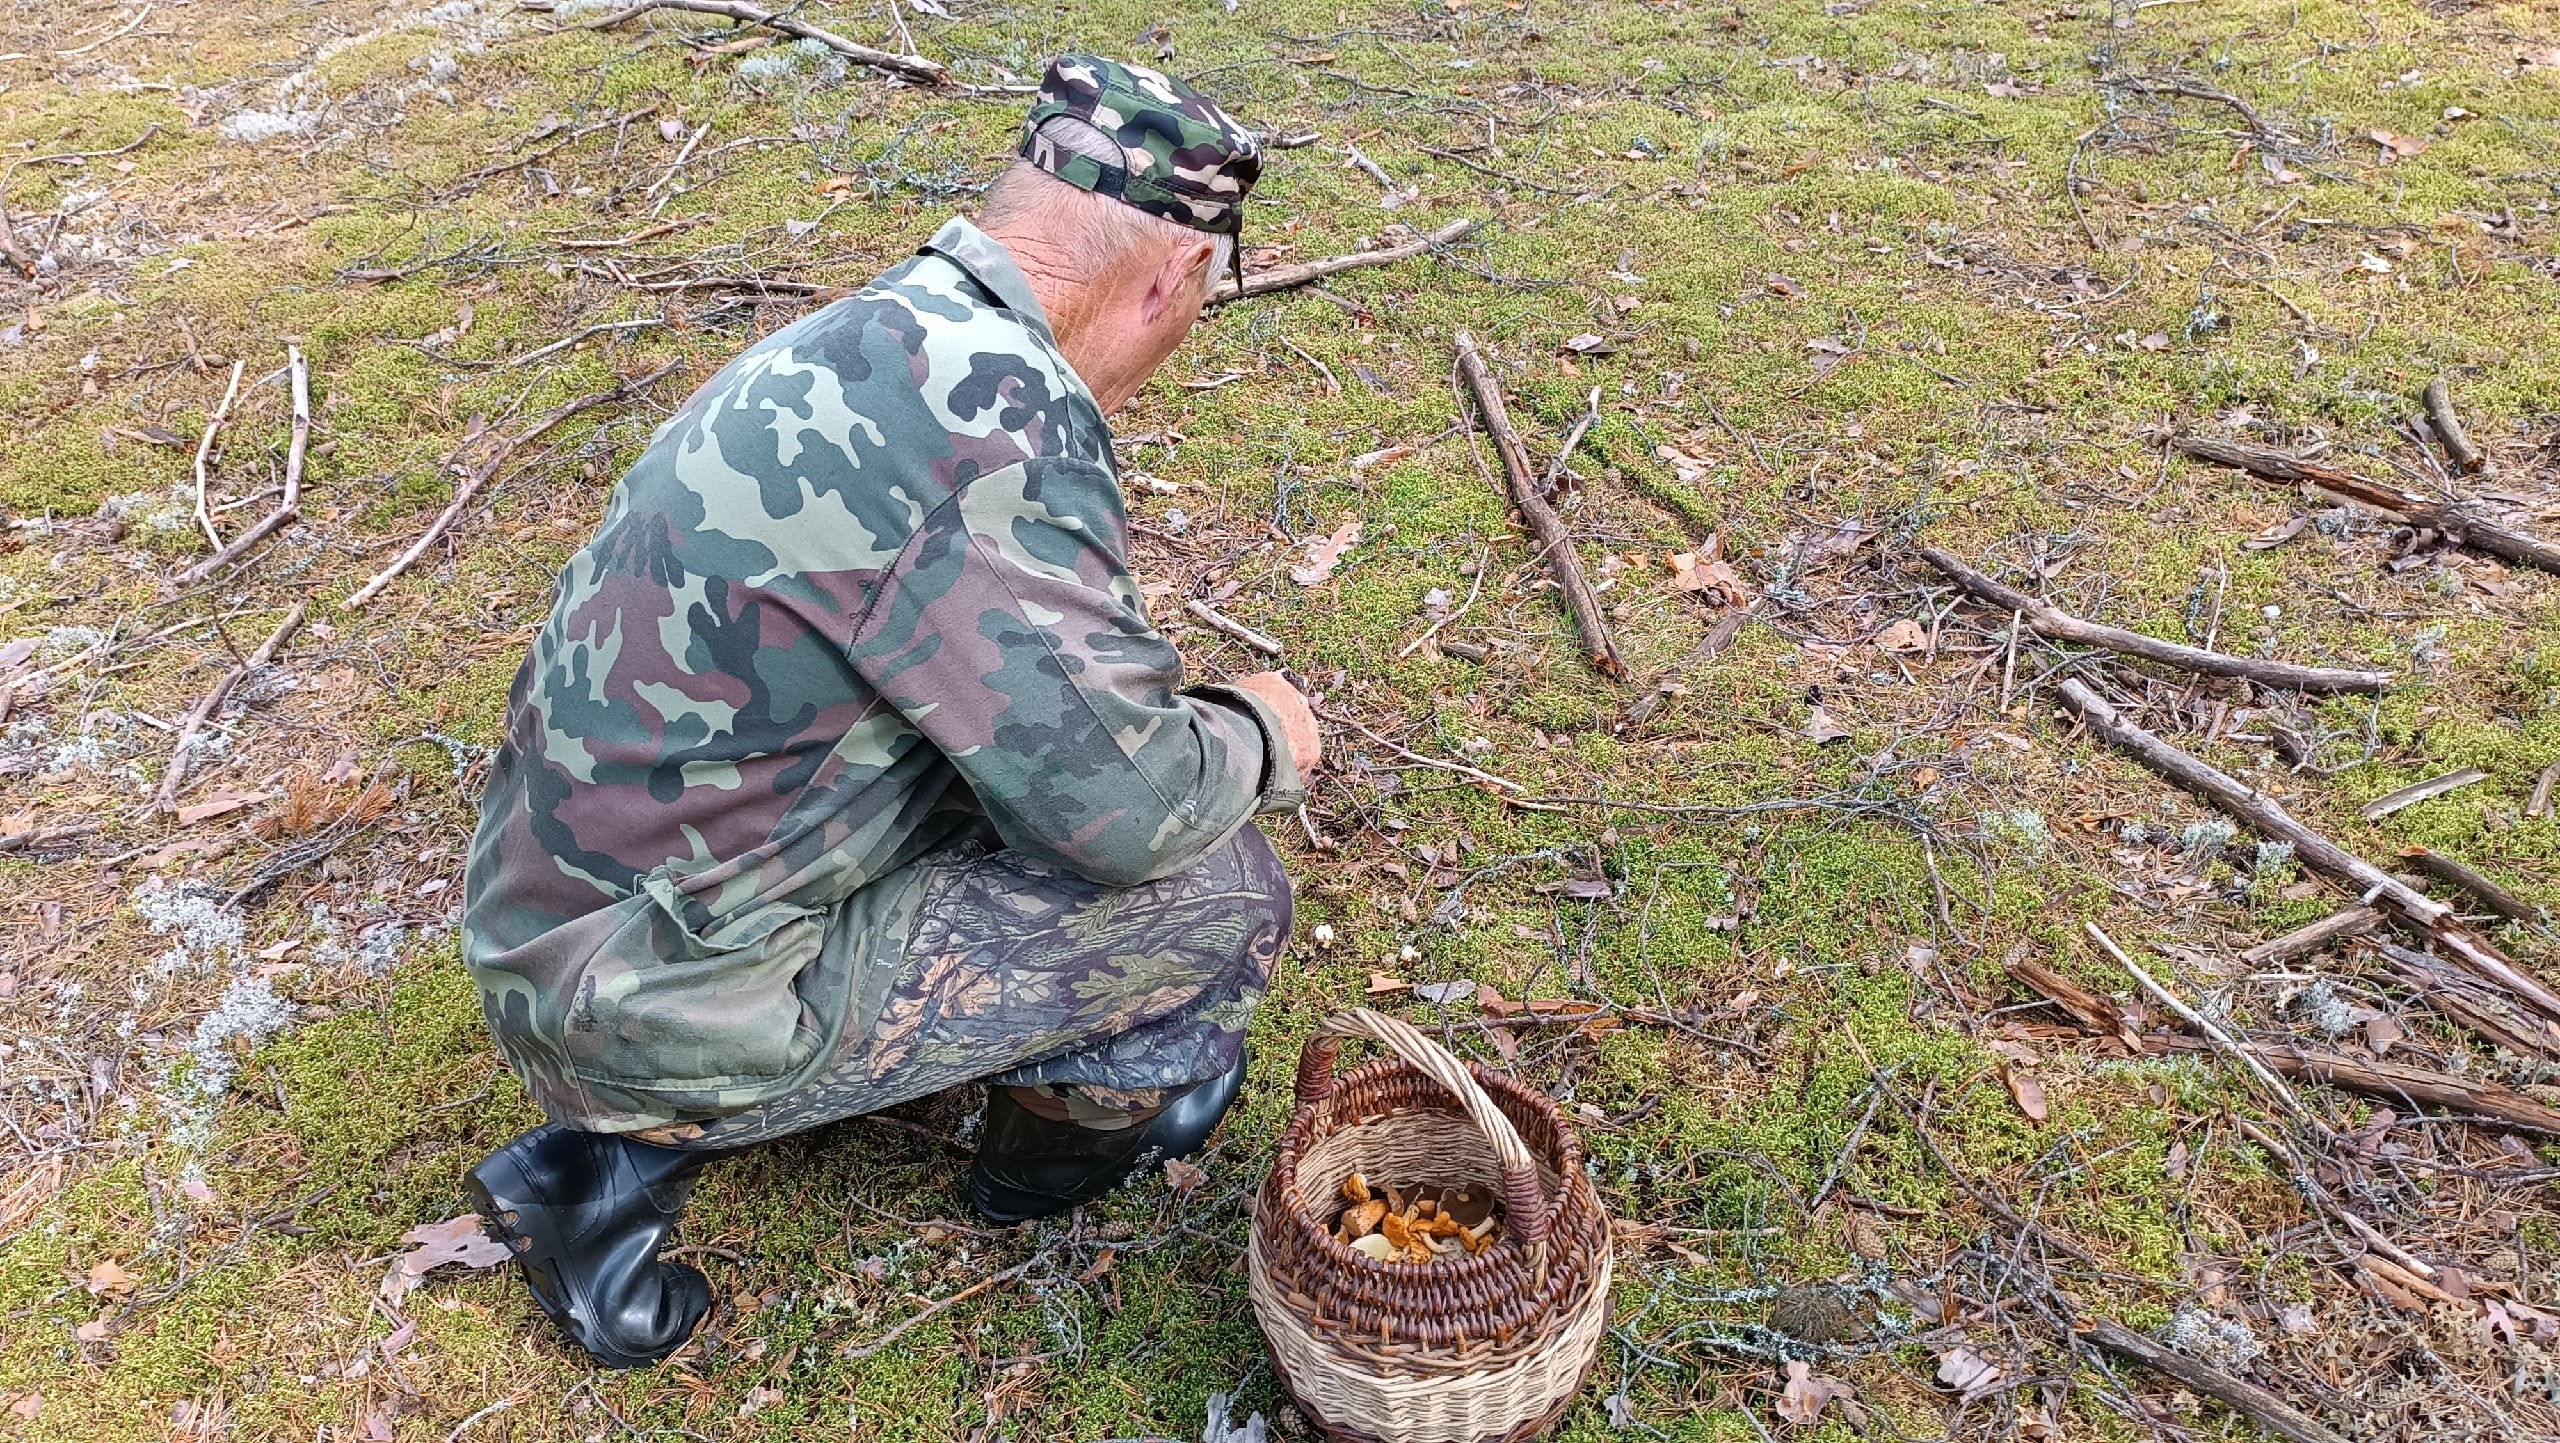  В Ярославле найден уникальный чудо-гриб, способный лечить больных